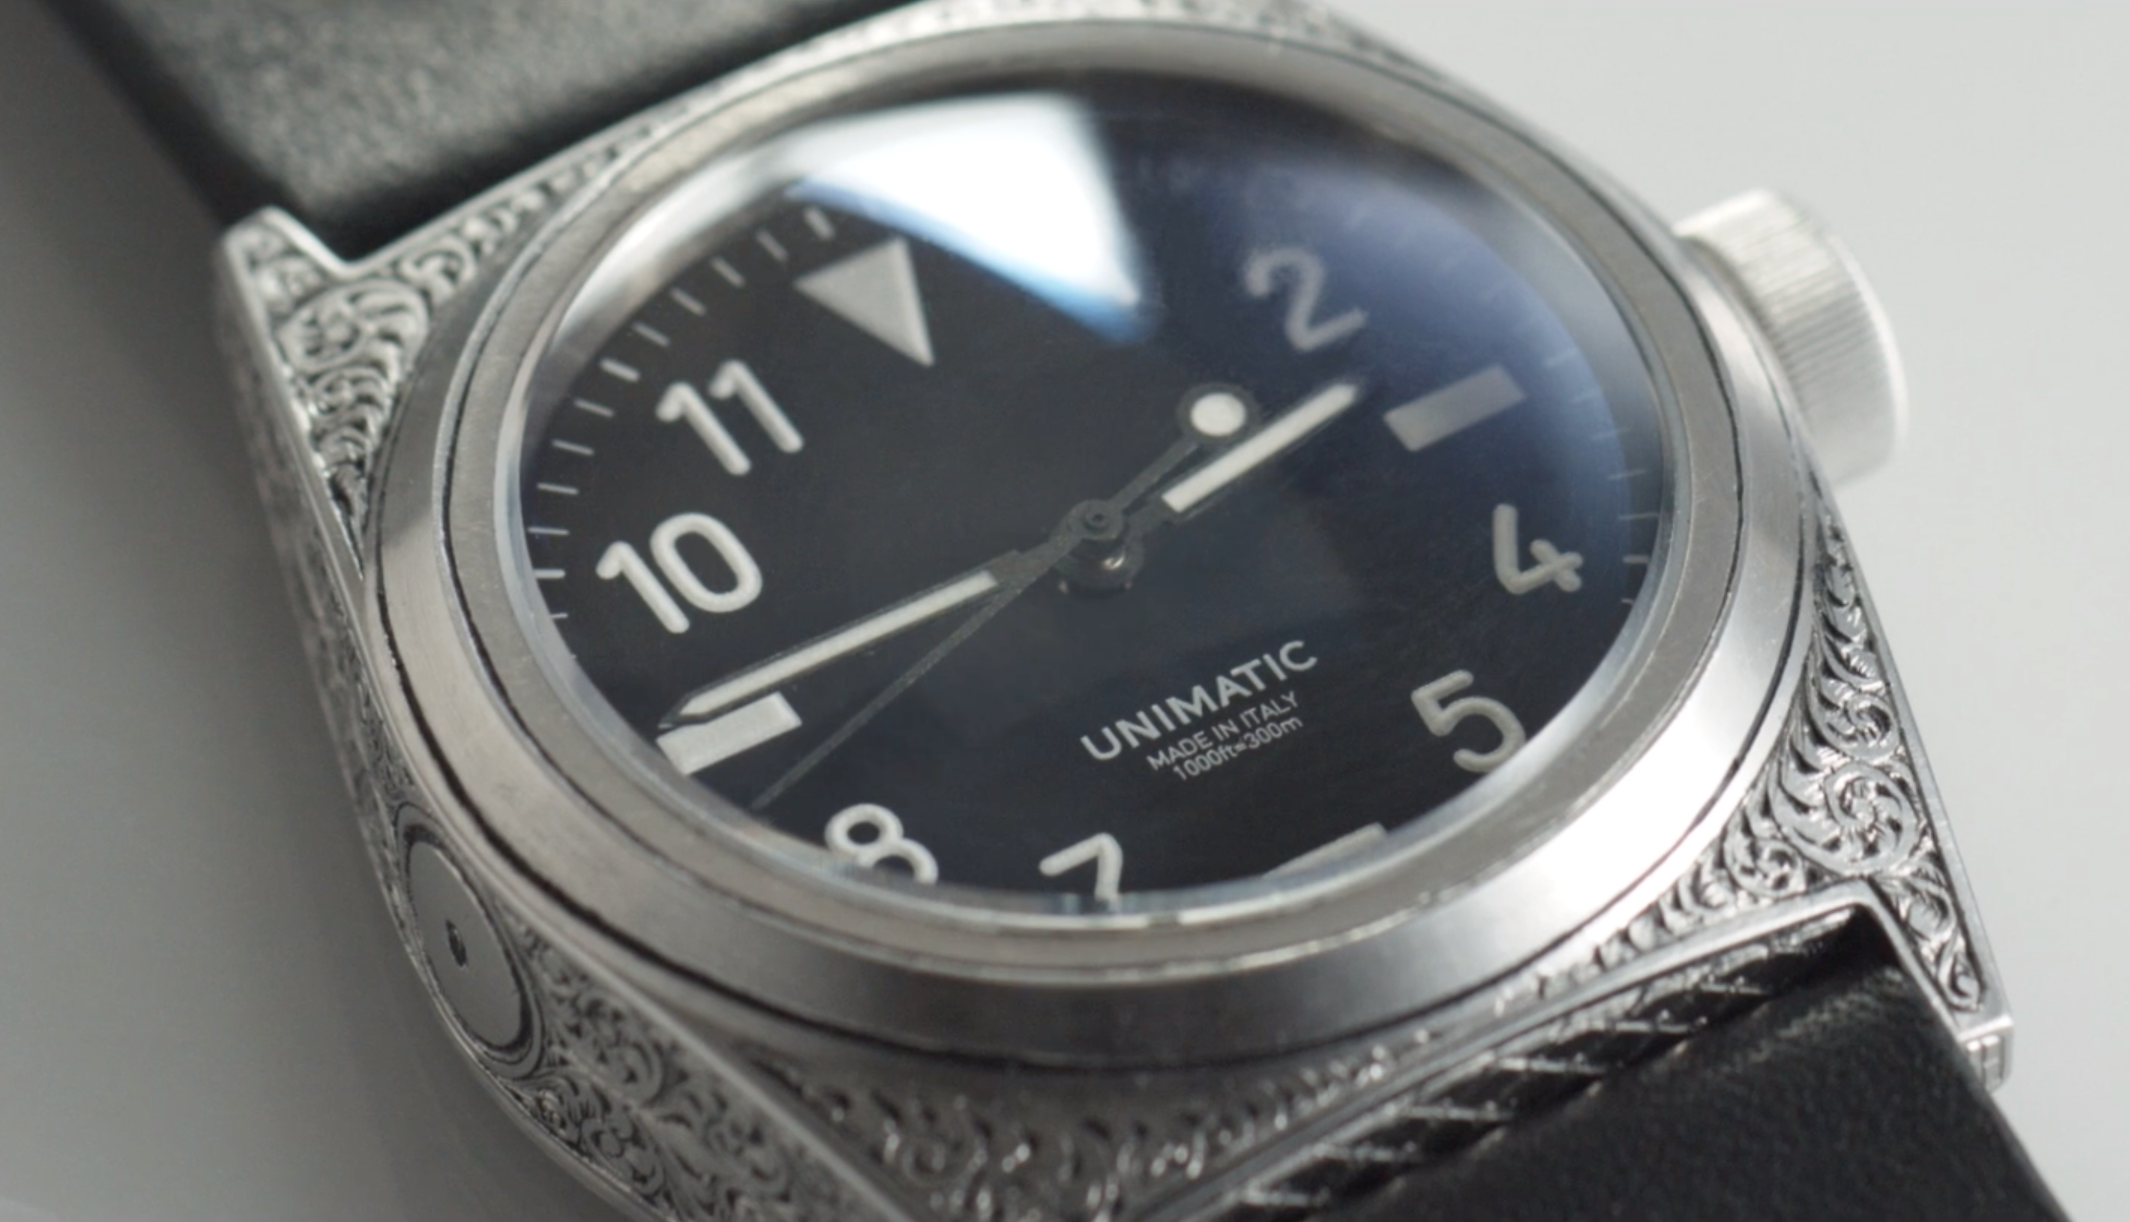 Unimatic watches